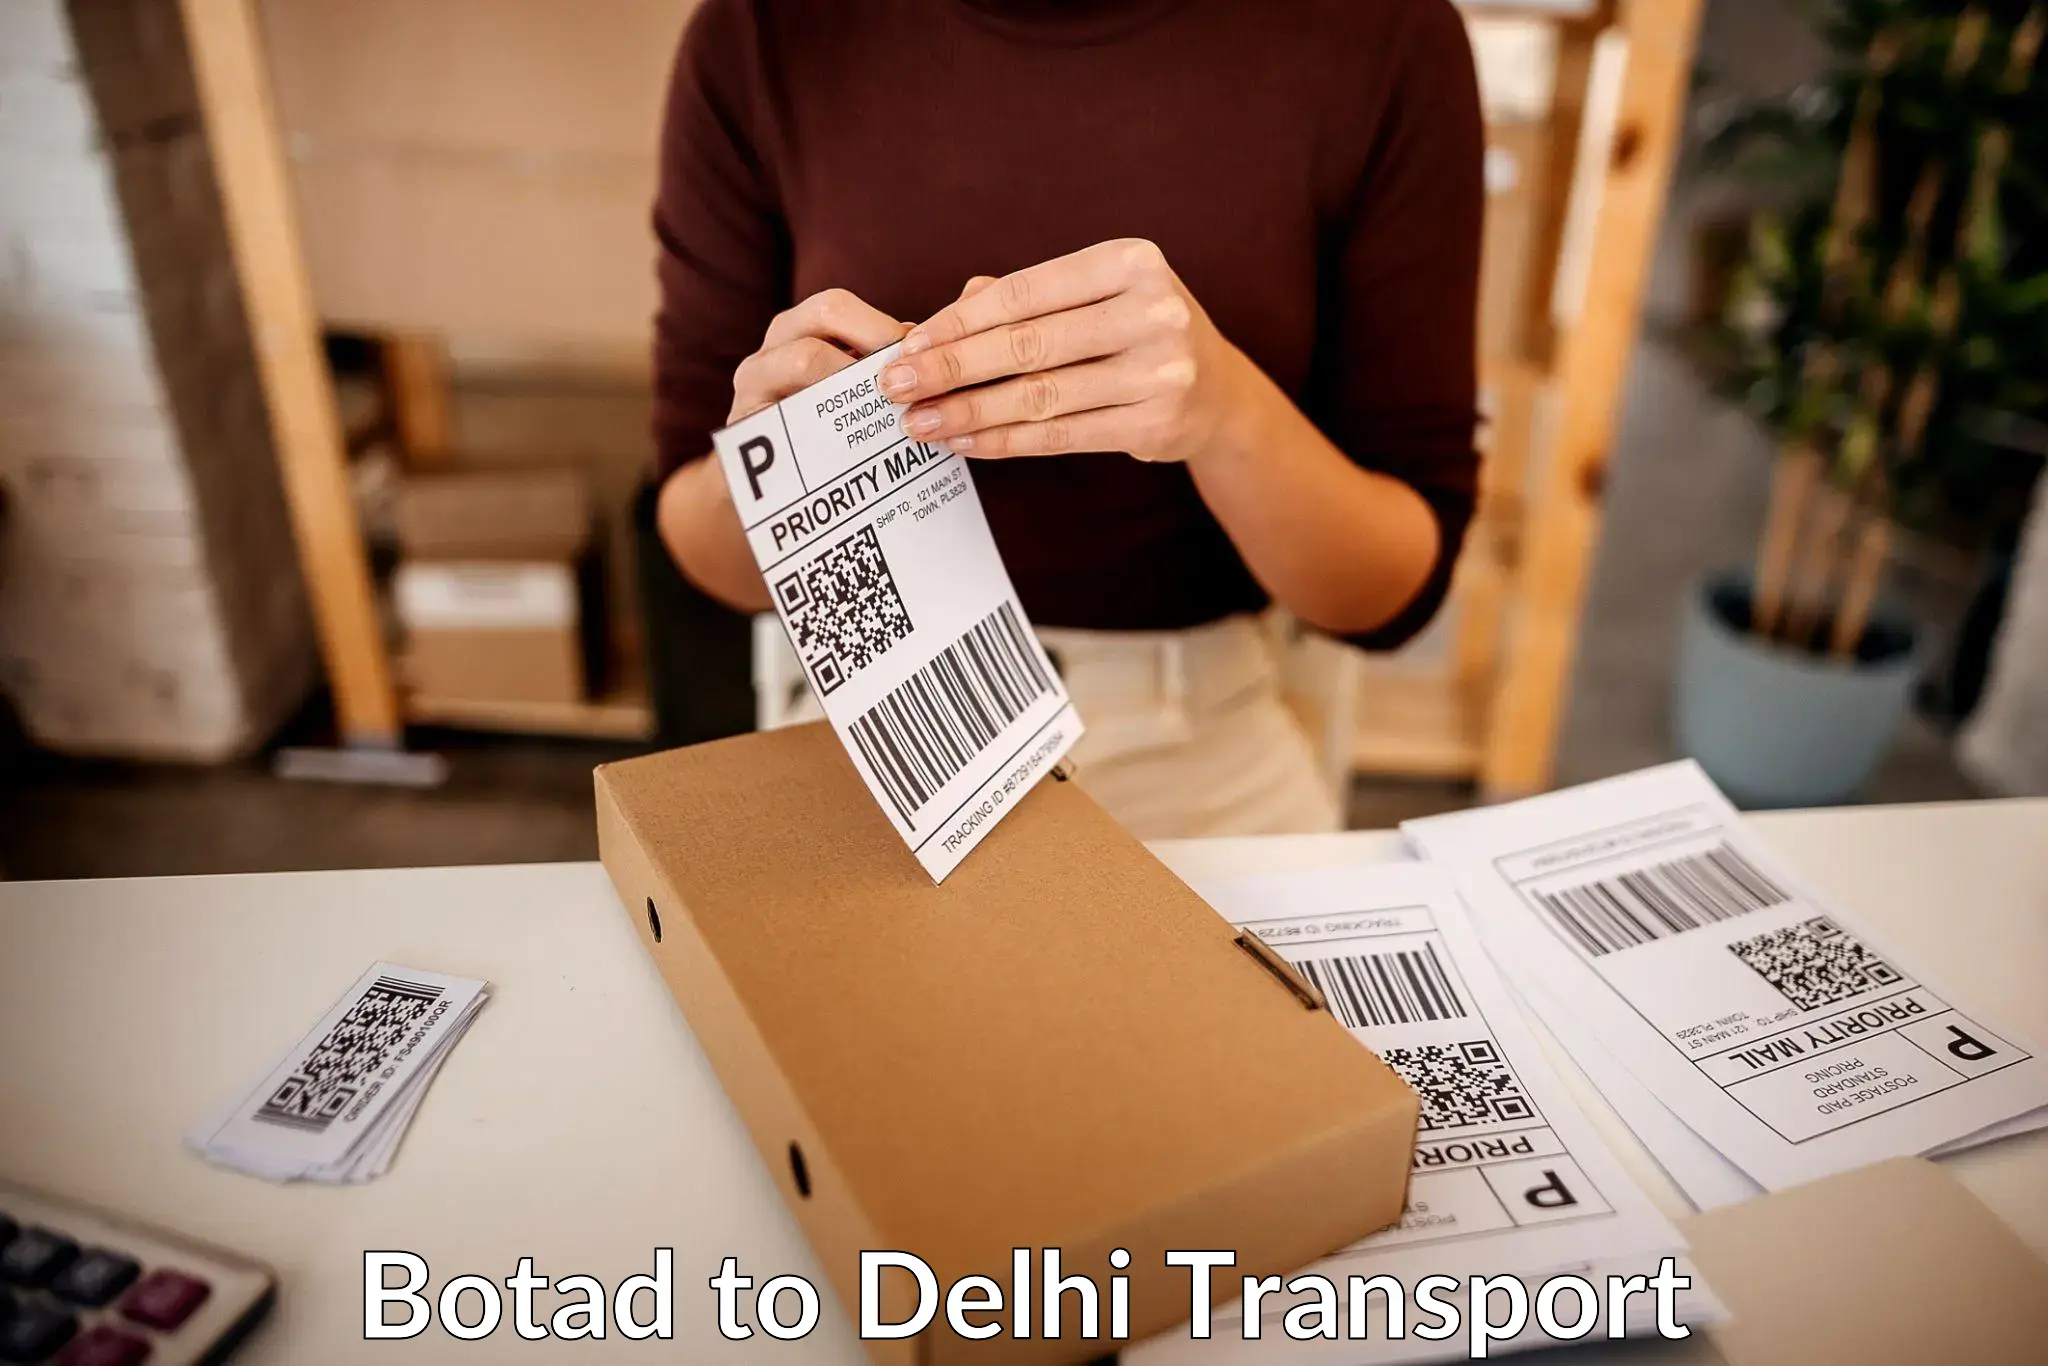 Intercity transport Botad to NIT Delhi